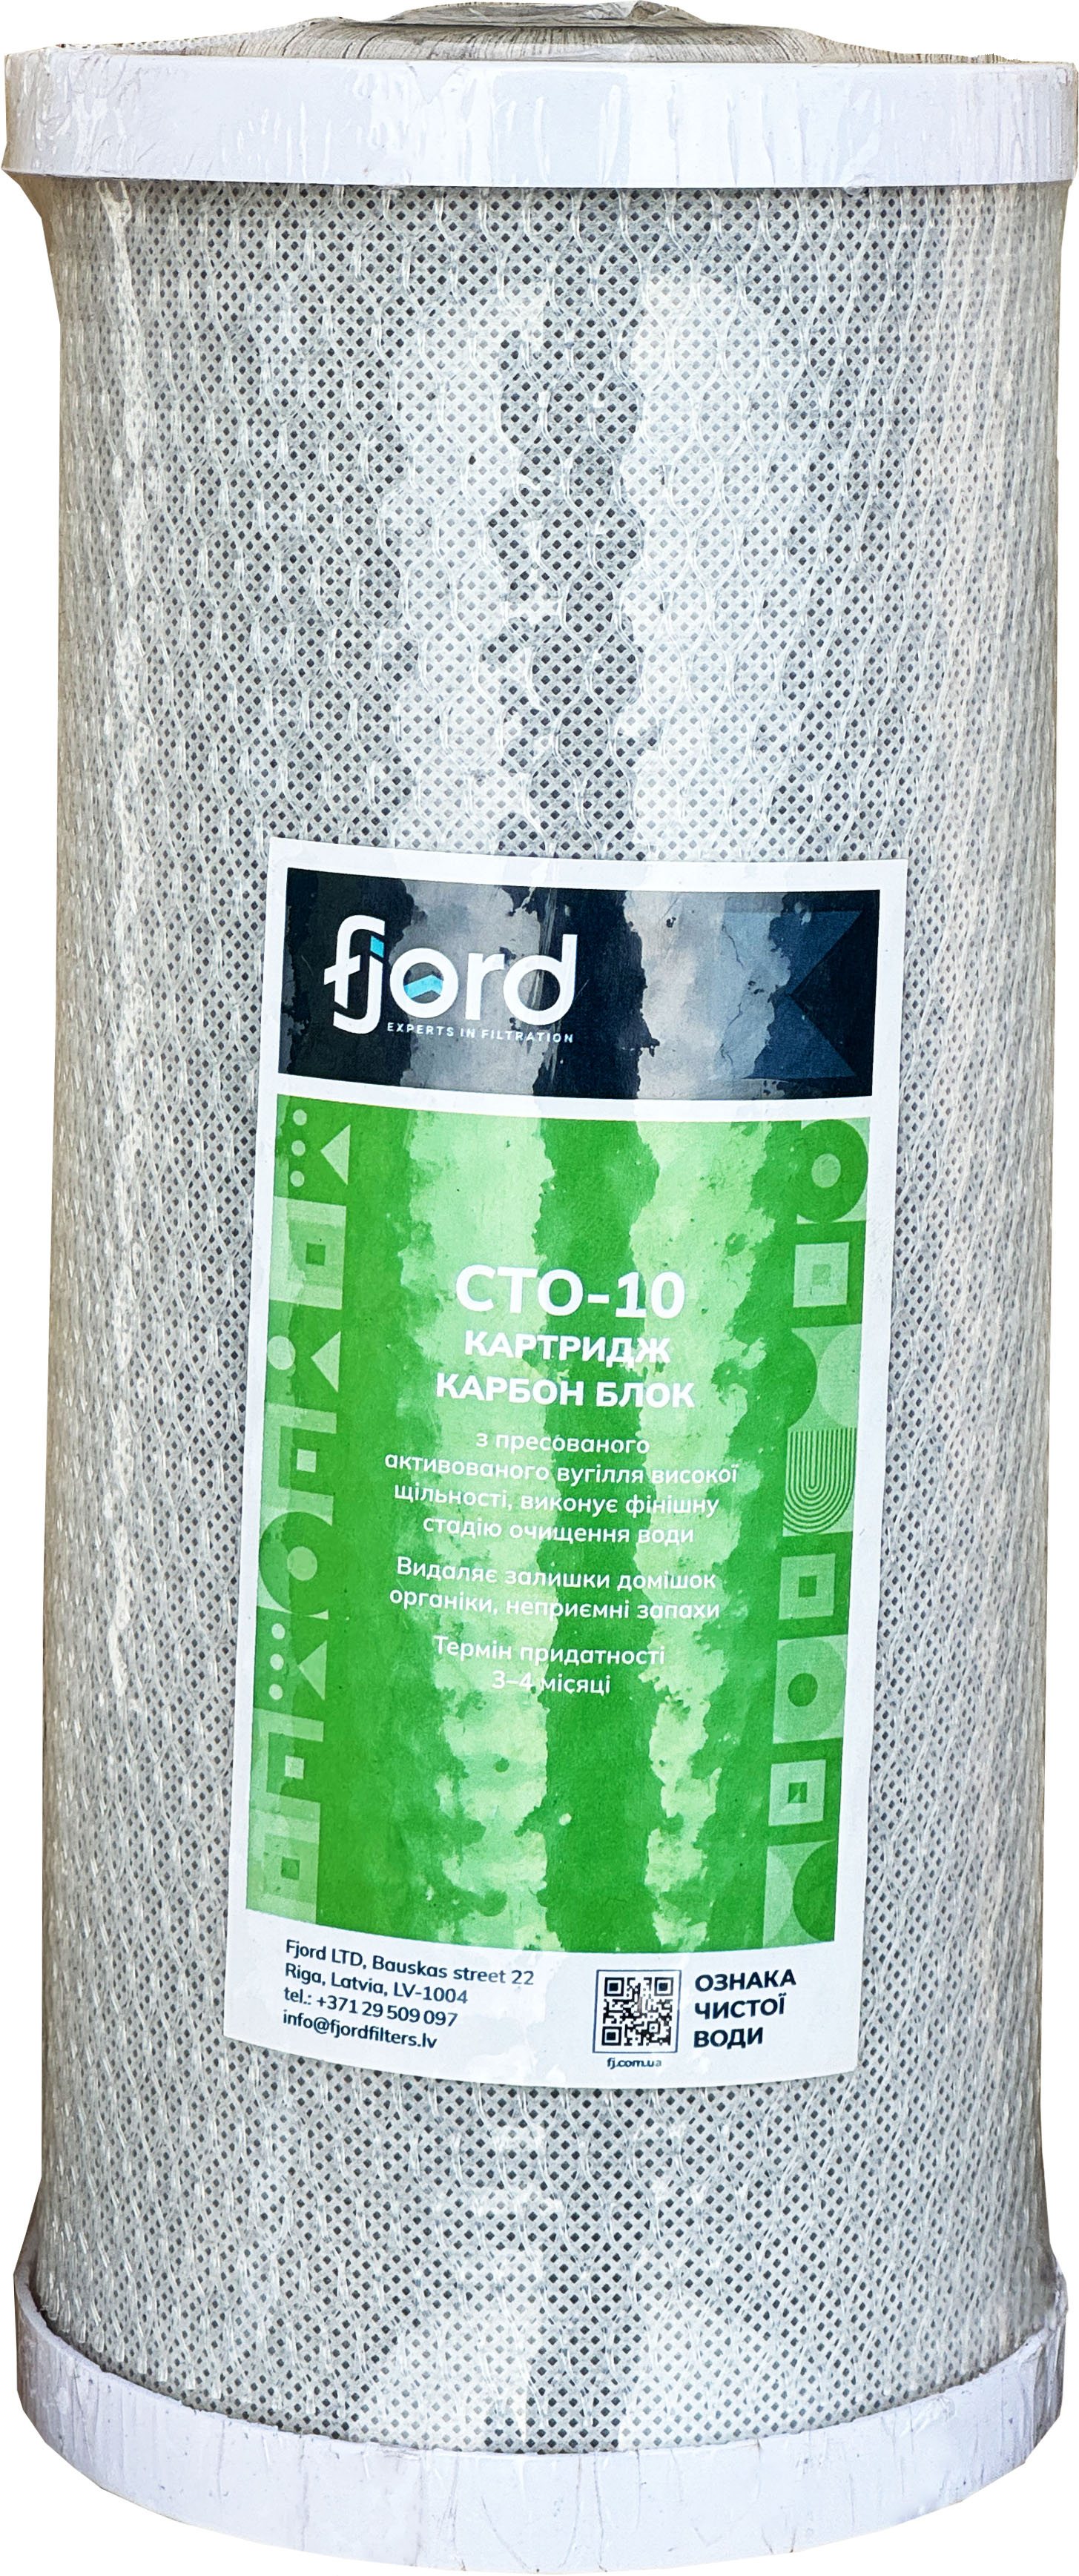 Інструкція картридж для фільтру Fjord CTO-BB10 (вугілля)